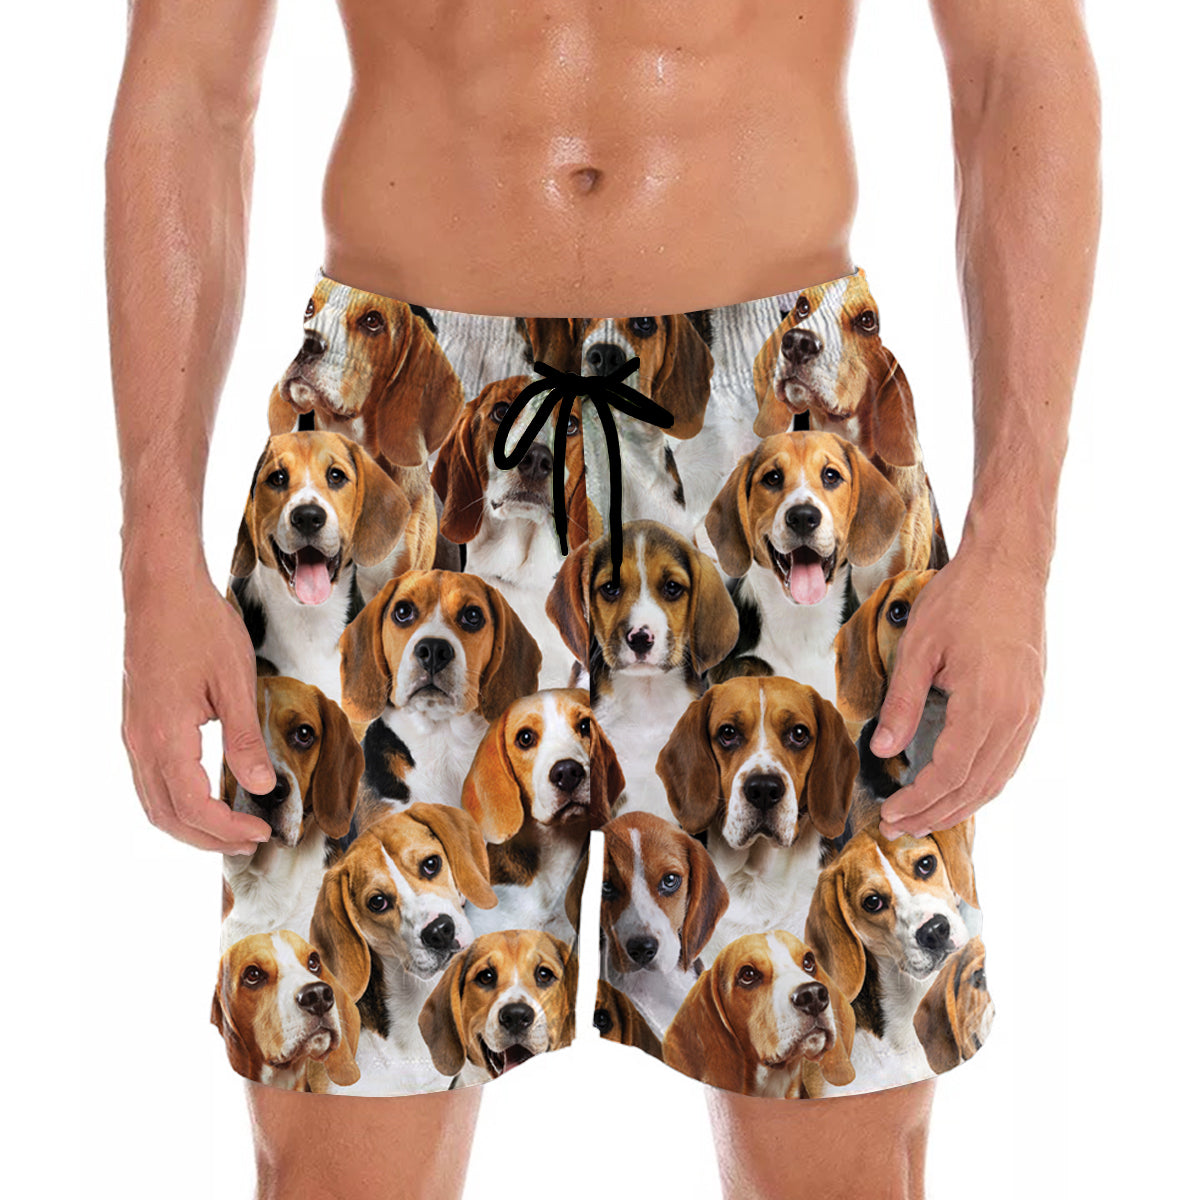 Du wirst einen Haufen Beagles haben - Shorts V1